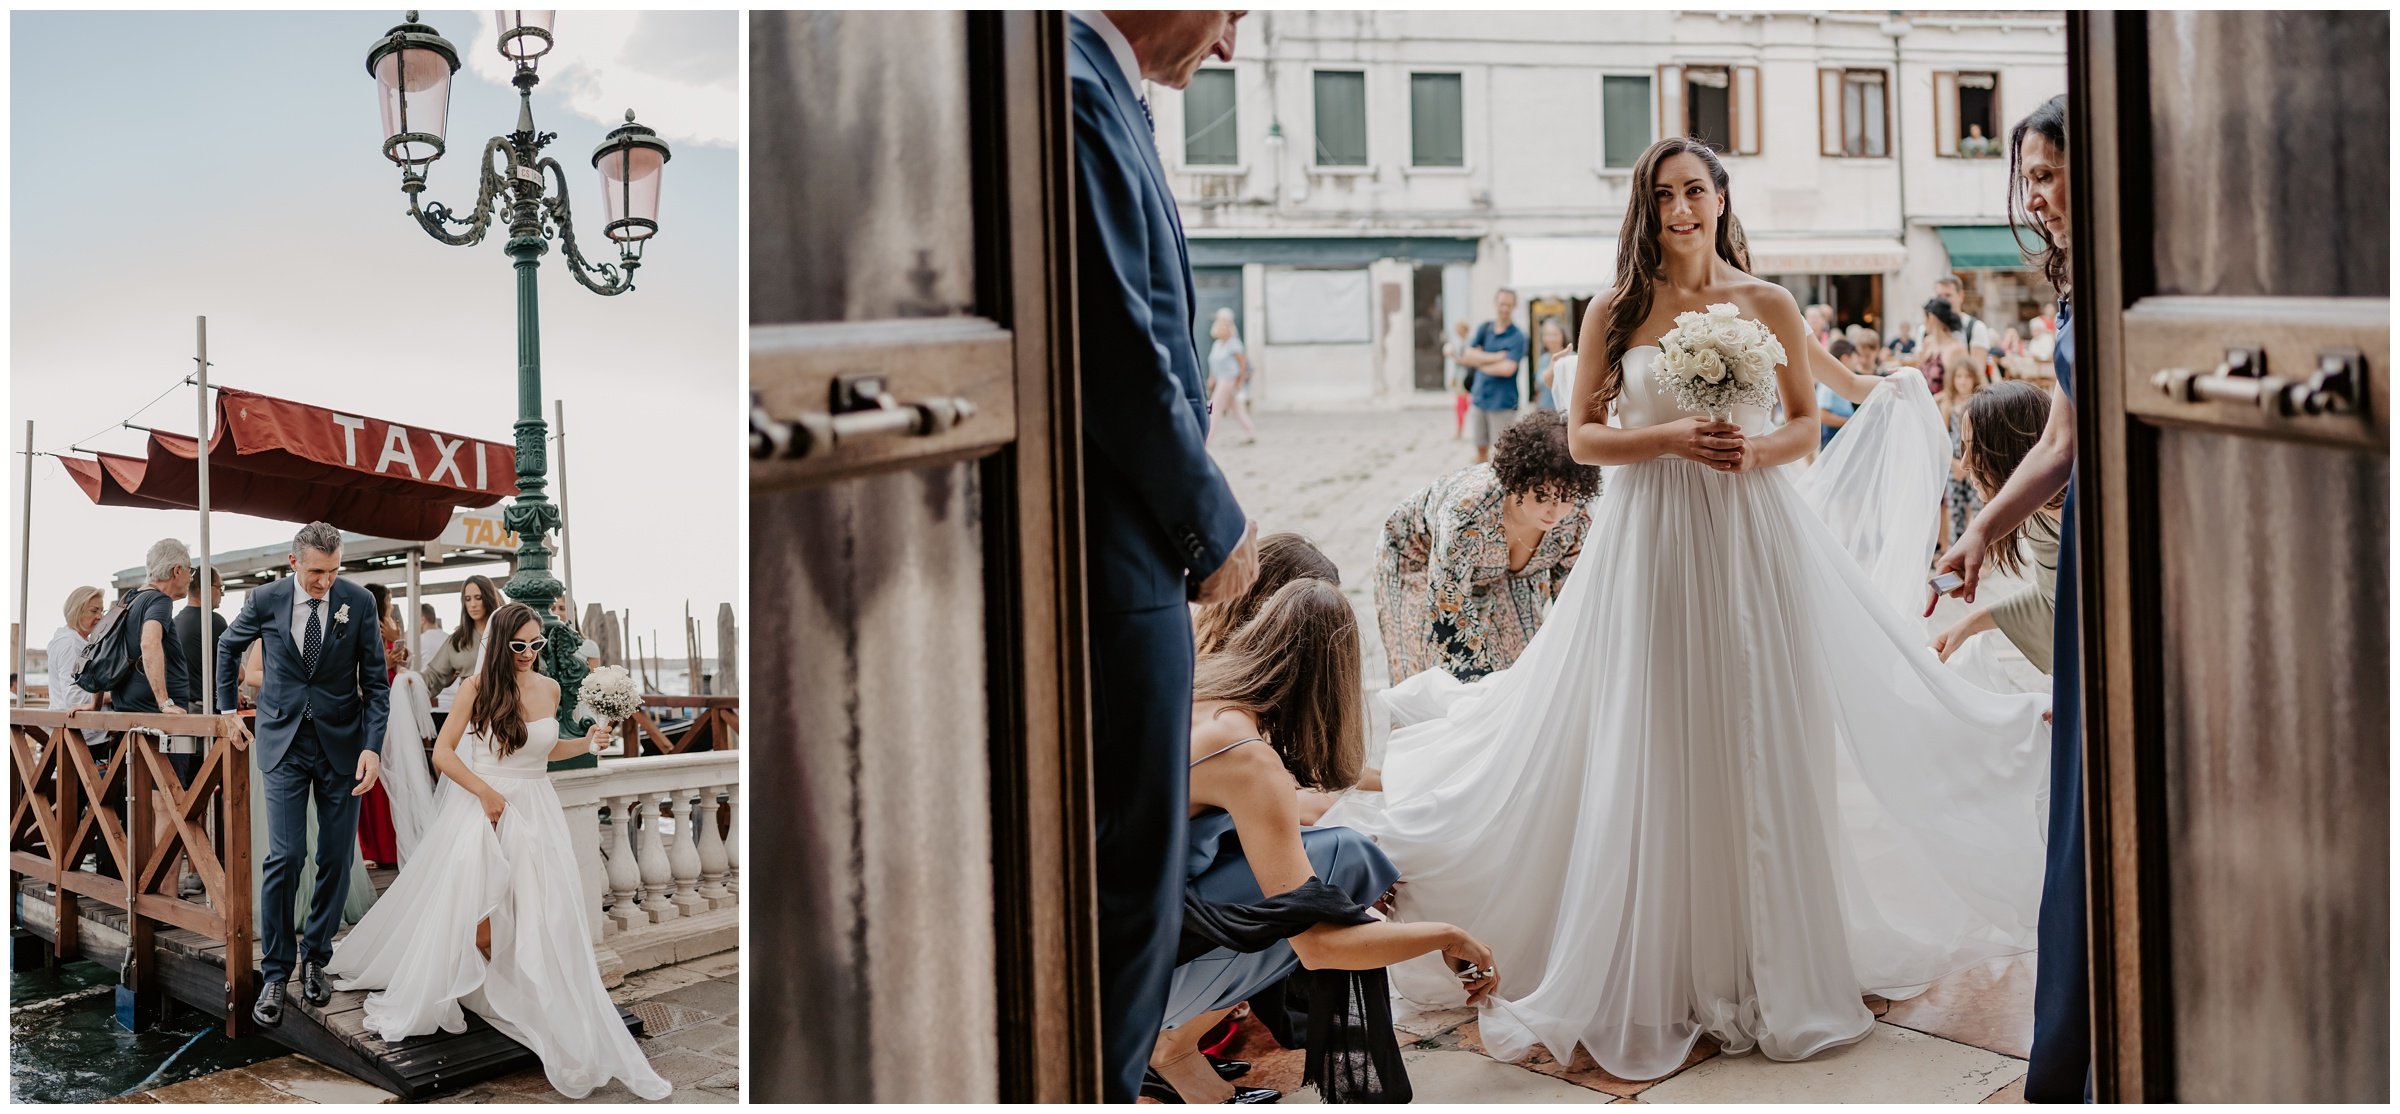 Matrimonio-san-servolo-fotografo-matrimonio-treviso-fotografo-matrimonio-venezia_0099.jpg